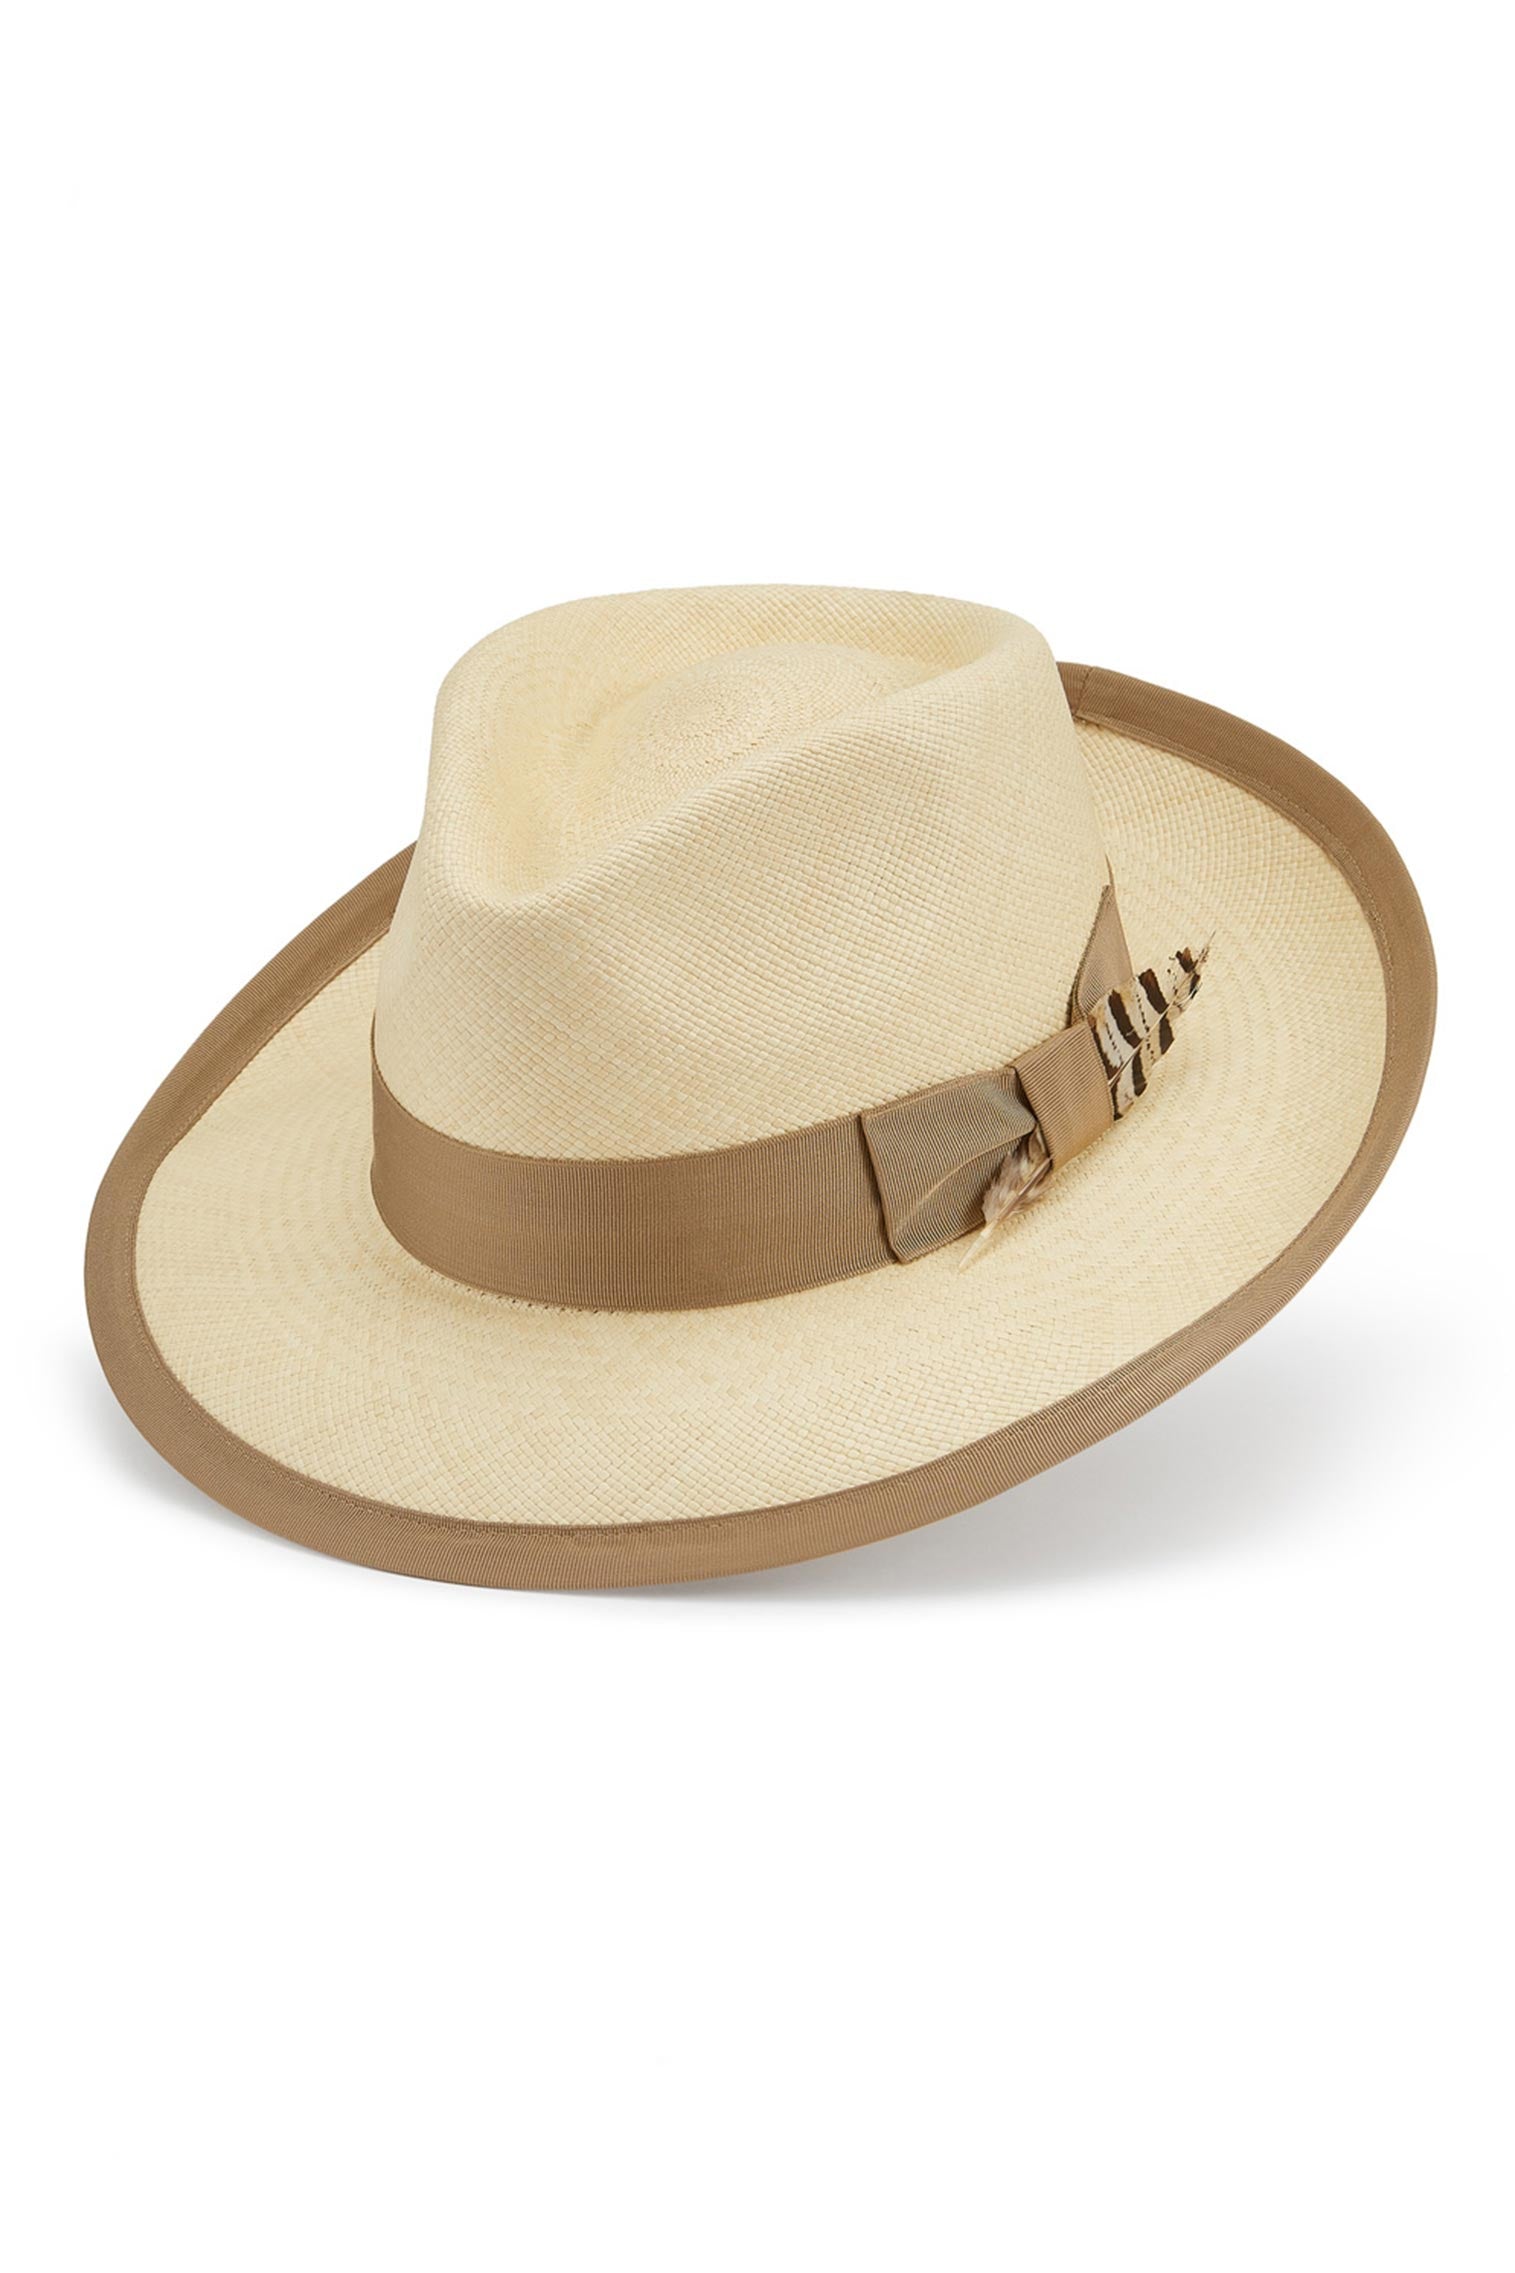 San Diego Panama - Sun Hats & Boaters - Lock & Co. Hatters London UK